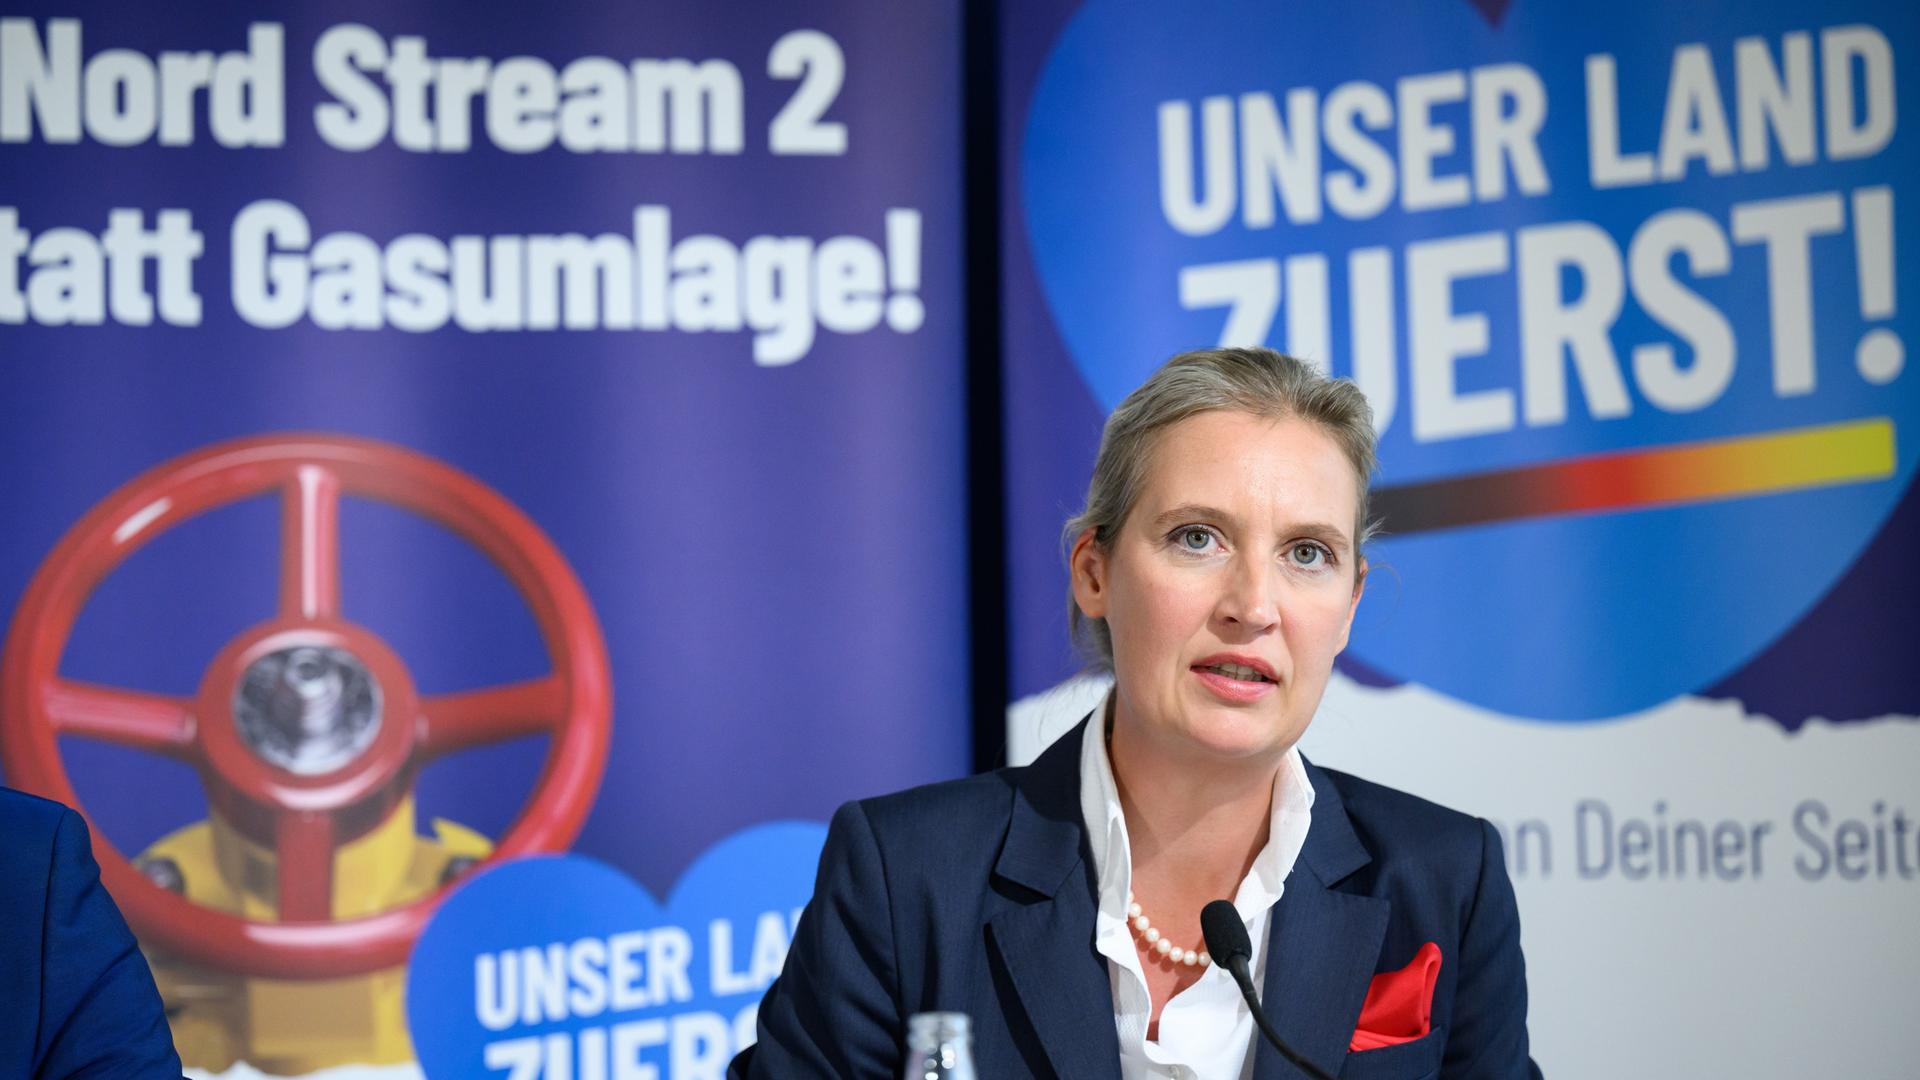 AfD-Co-Vorsitzende Alice Weidel präsentiert die Partei-Kampagne "Unser Land zuerst" am 8. September 2022